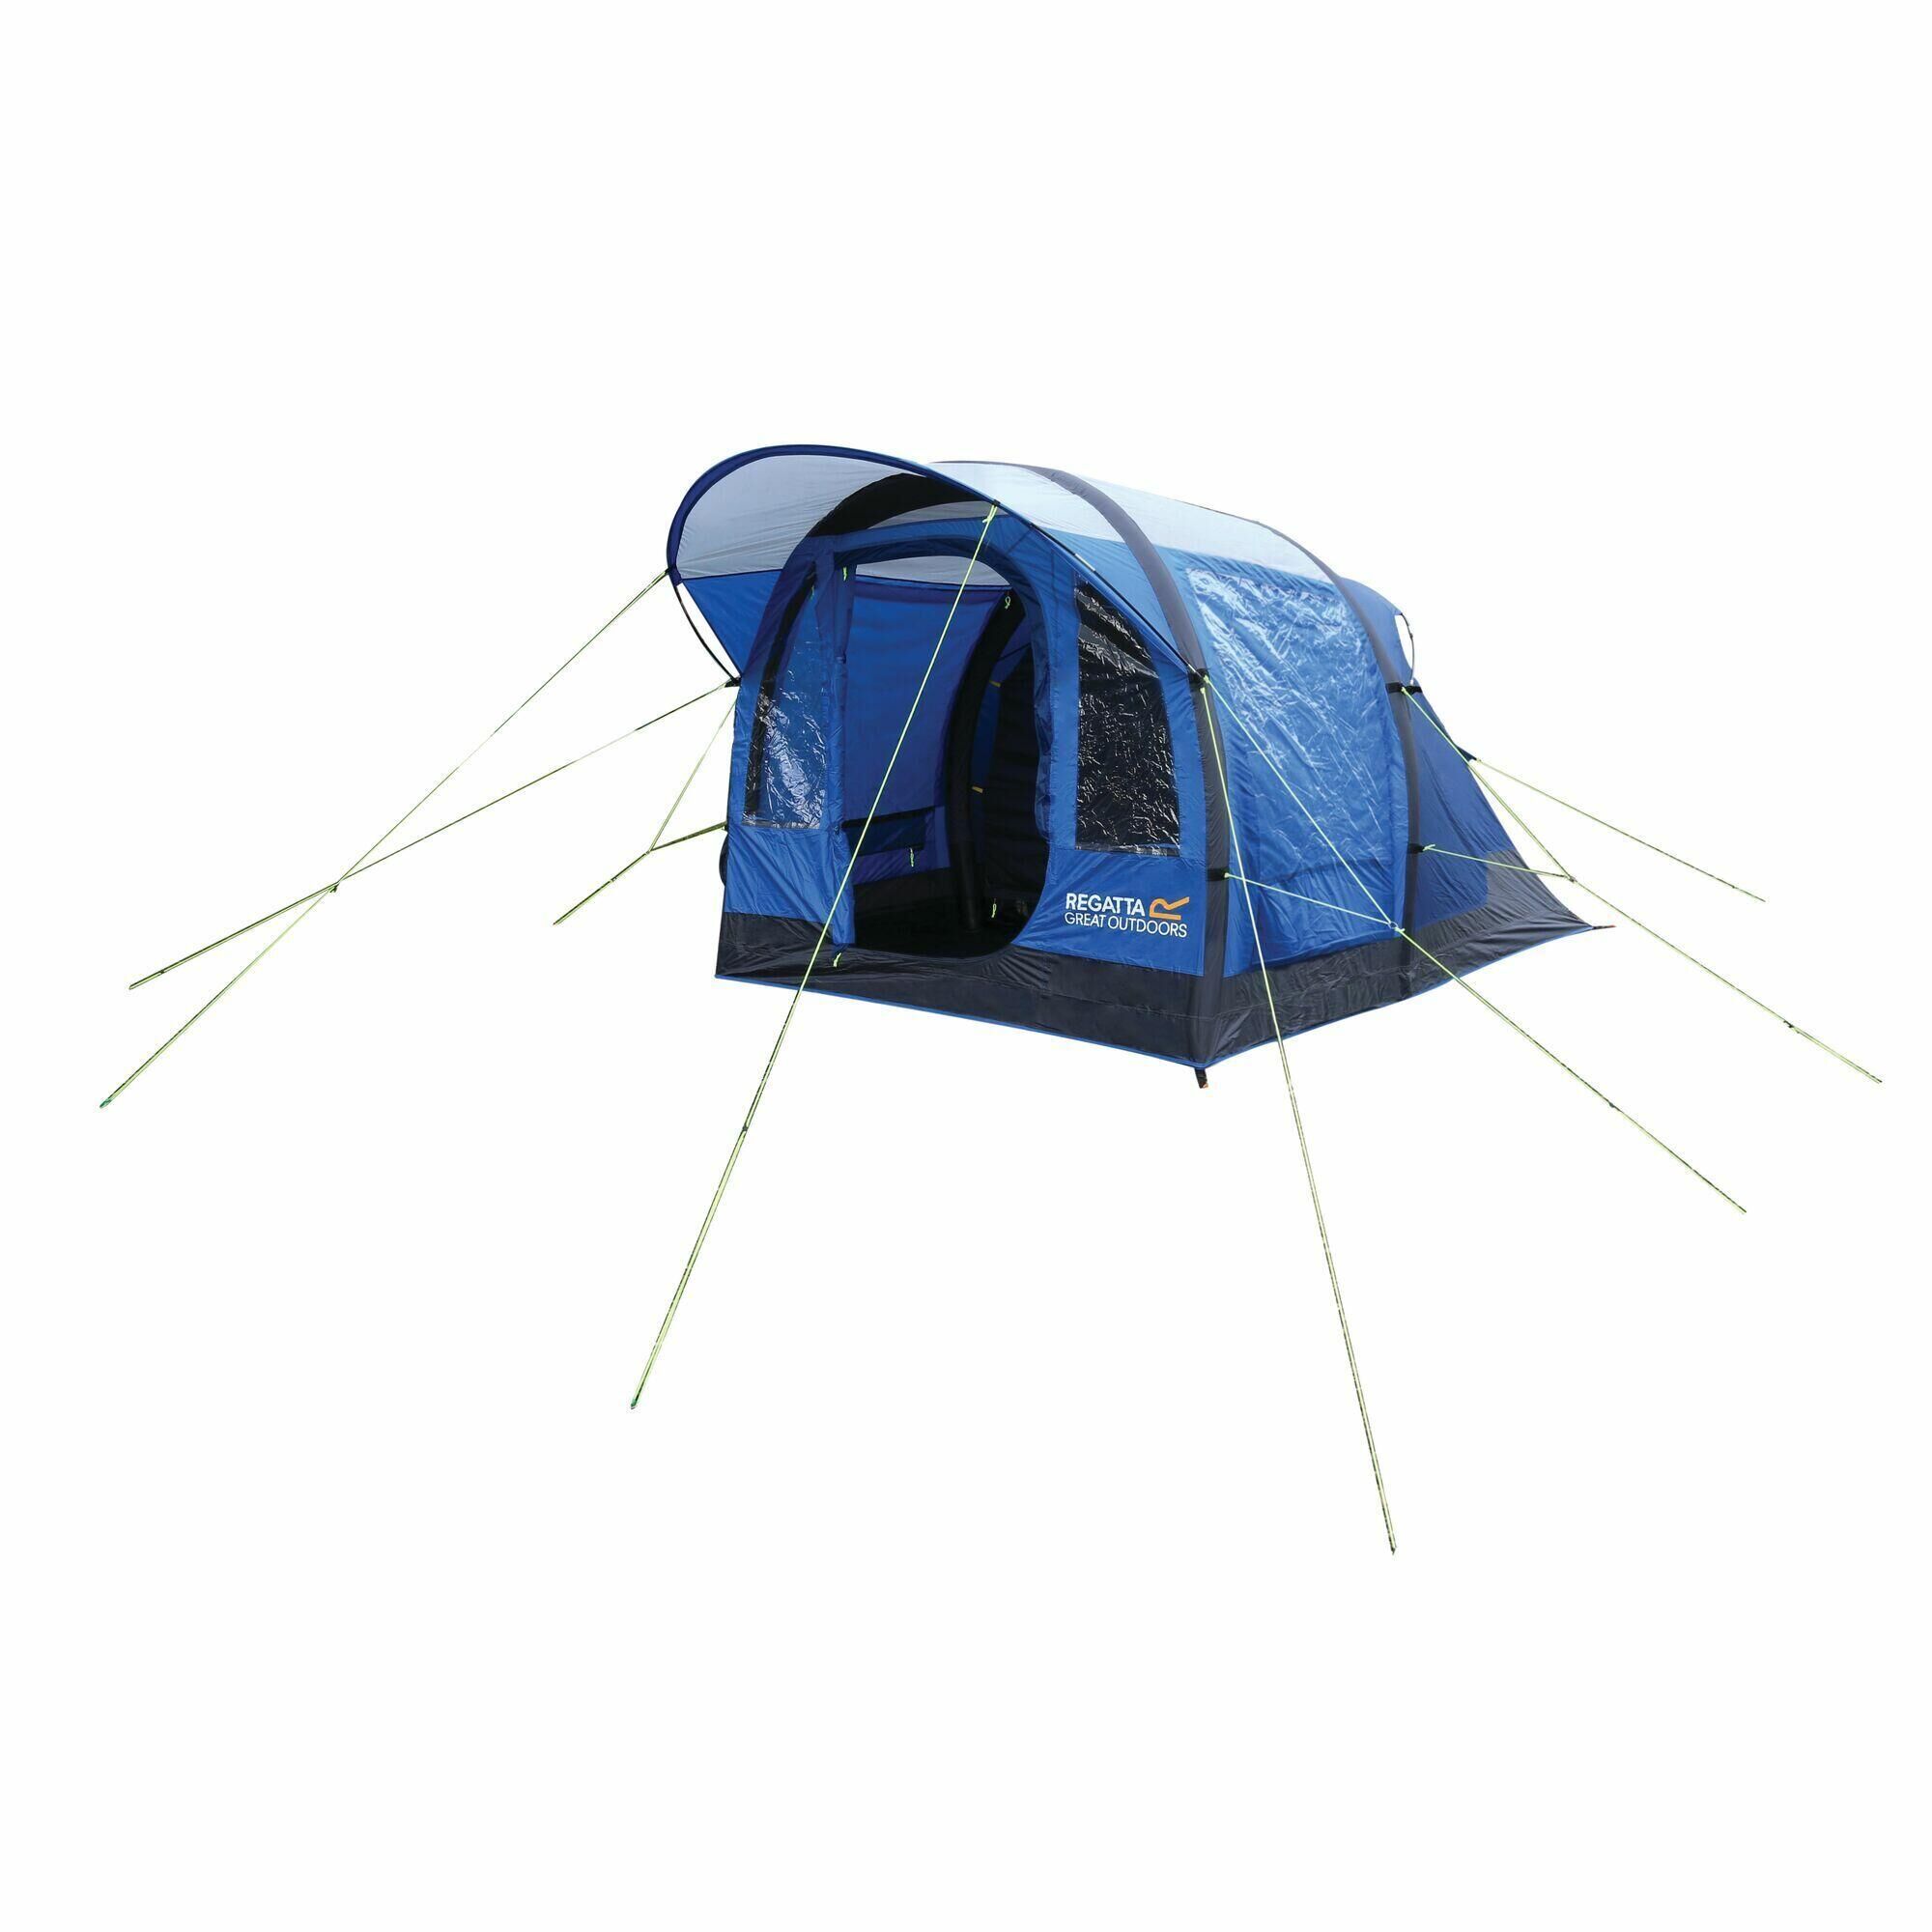 REGATTA 3 Person Family Tent (Laser Blue/Ebony)